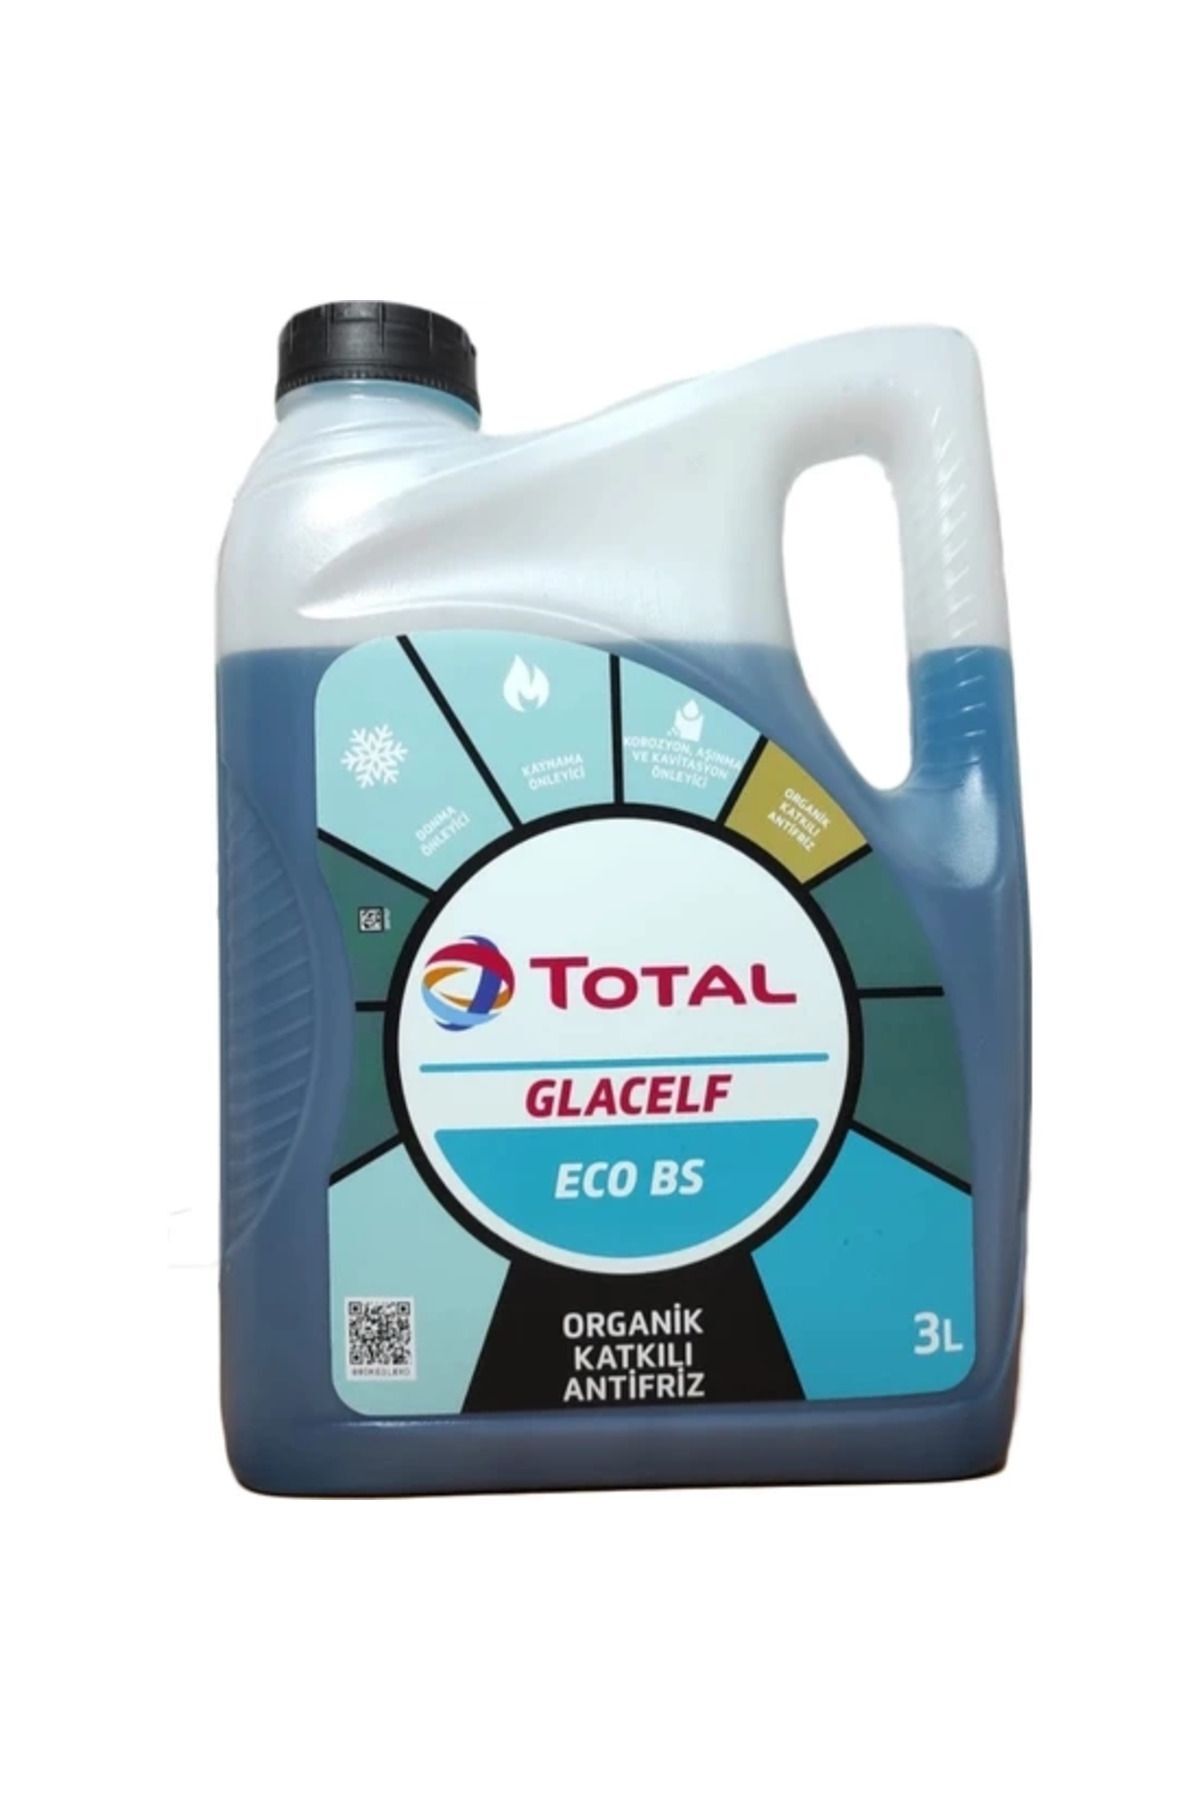 Total Glacelf Eco Bs Organik Katkılı Antifriz 3 L Üretim Yılı : 2022